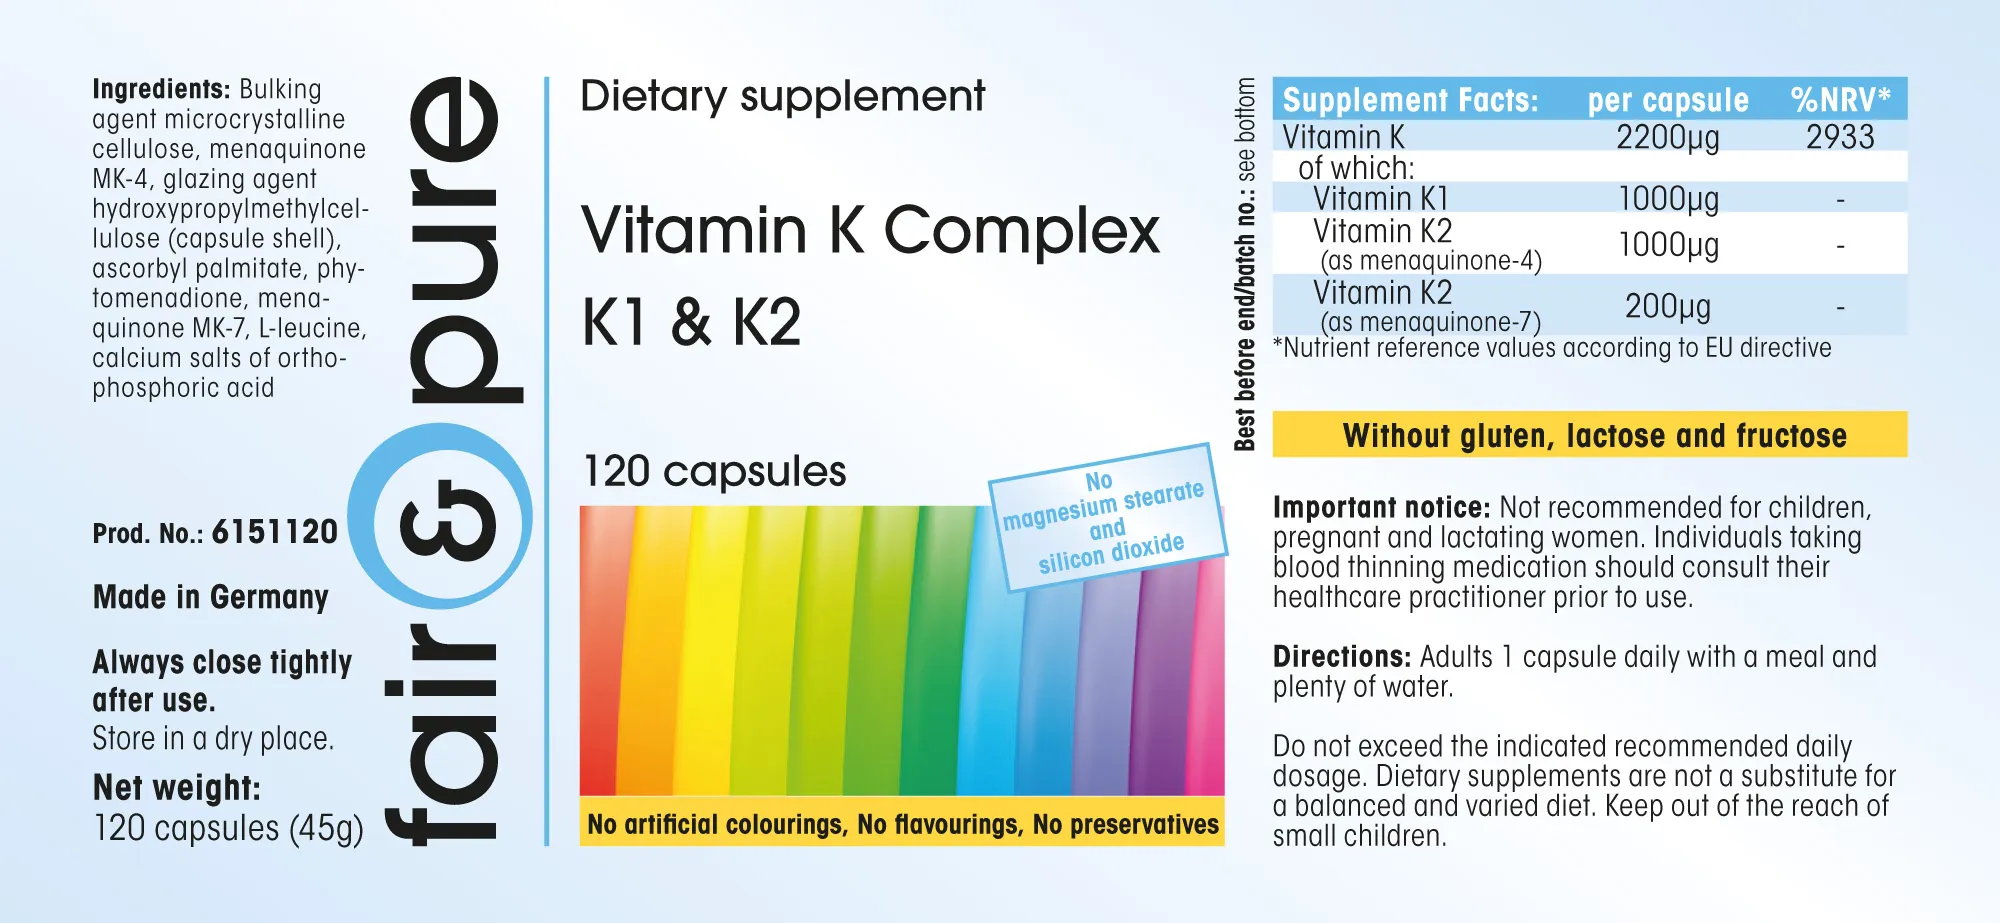 Vitamine K Complexe K1 & K2